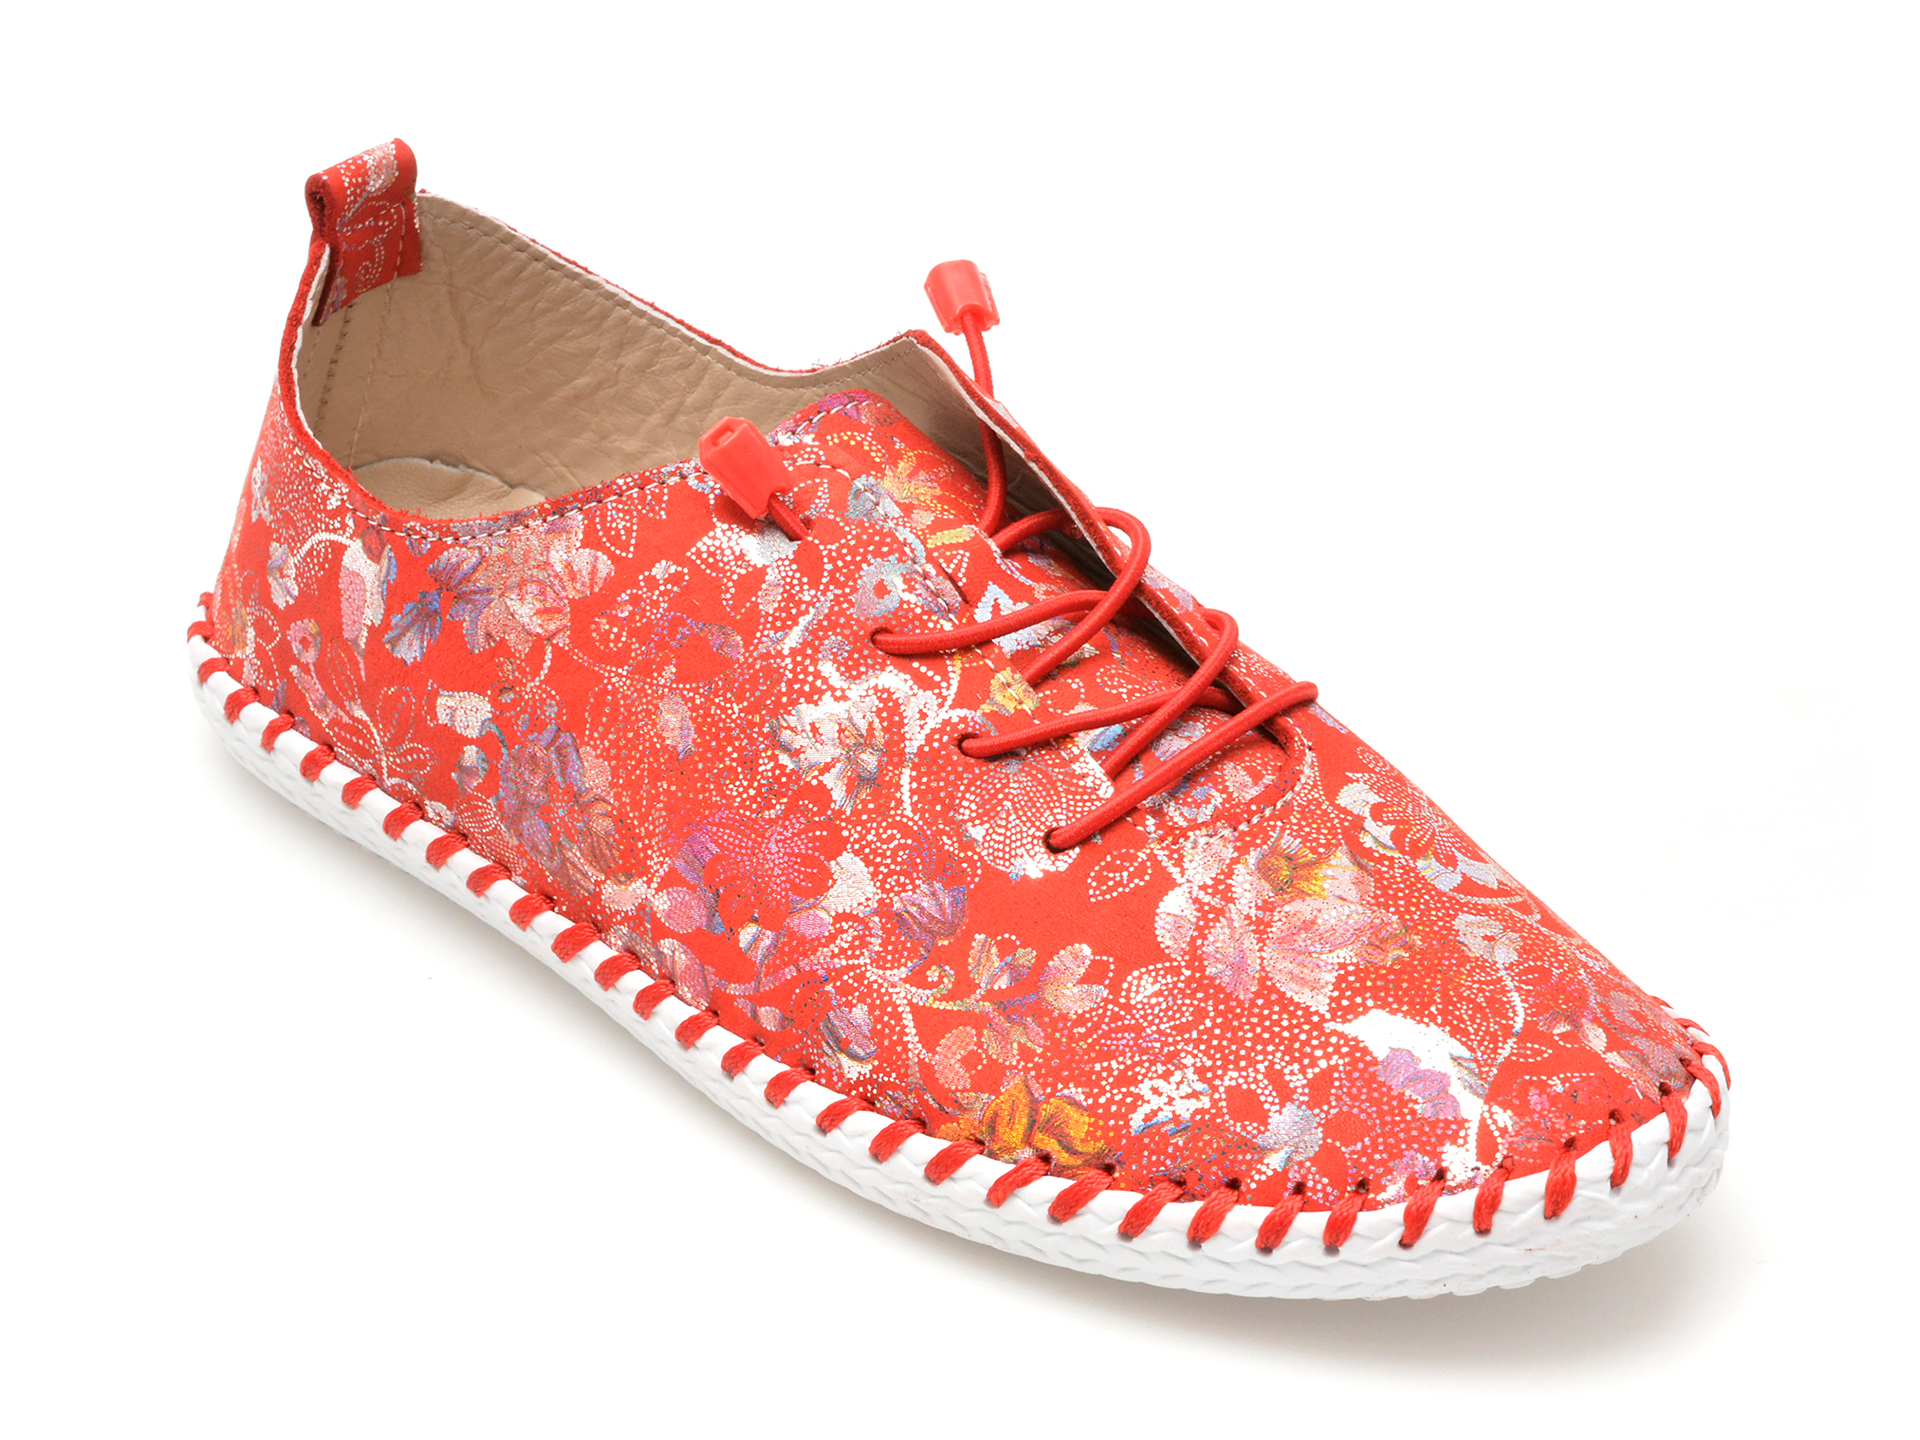 Pantofi casual FLAVIA PASSINI rosii, 2201622, din piele naturala